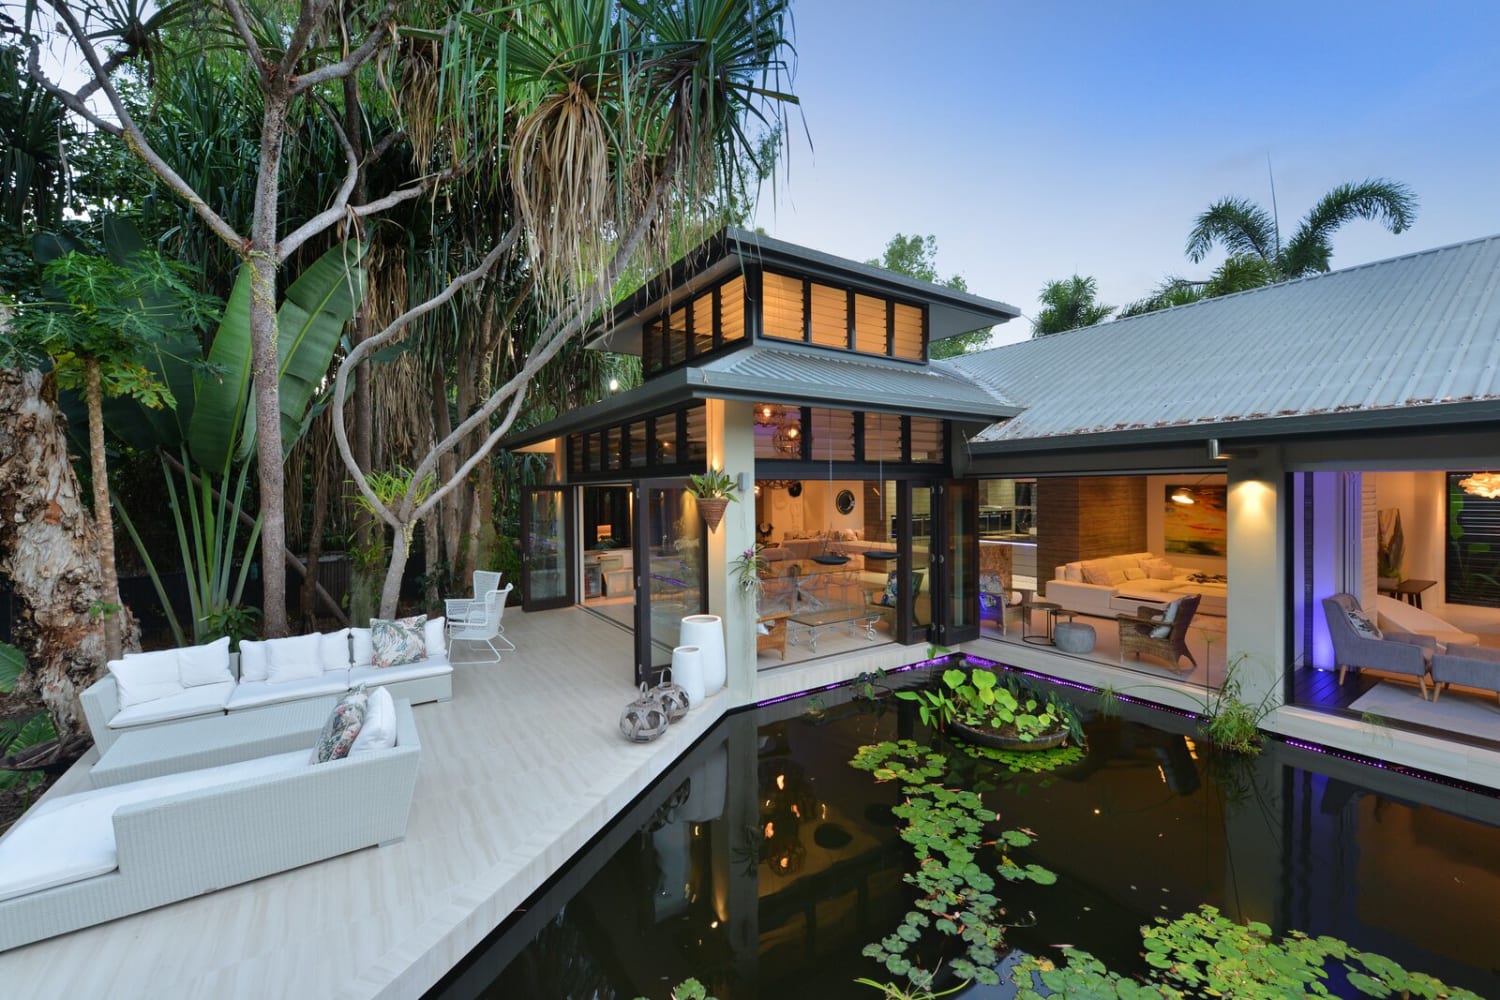 A Modern Home in Queensland Promoting Indoor-Outdoor Living Seeks $1.8M